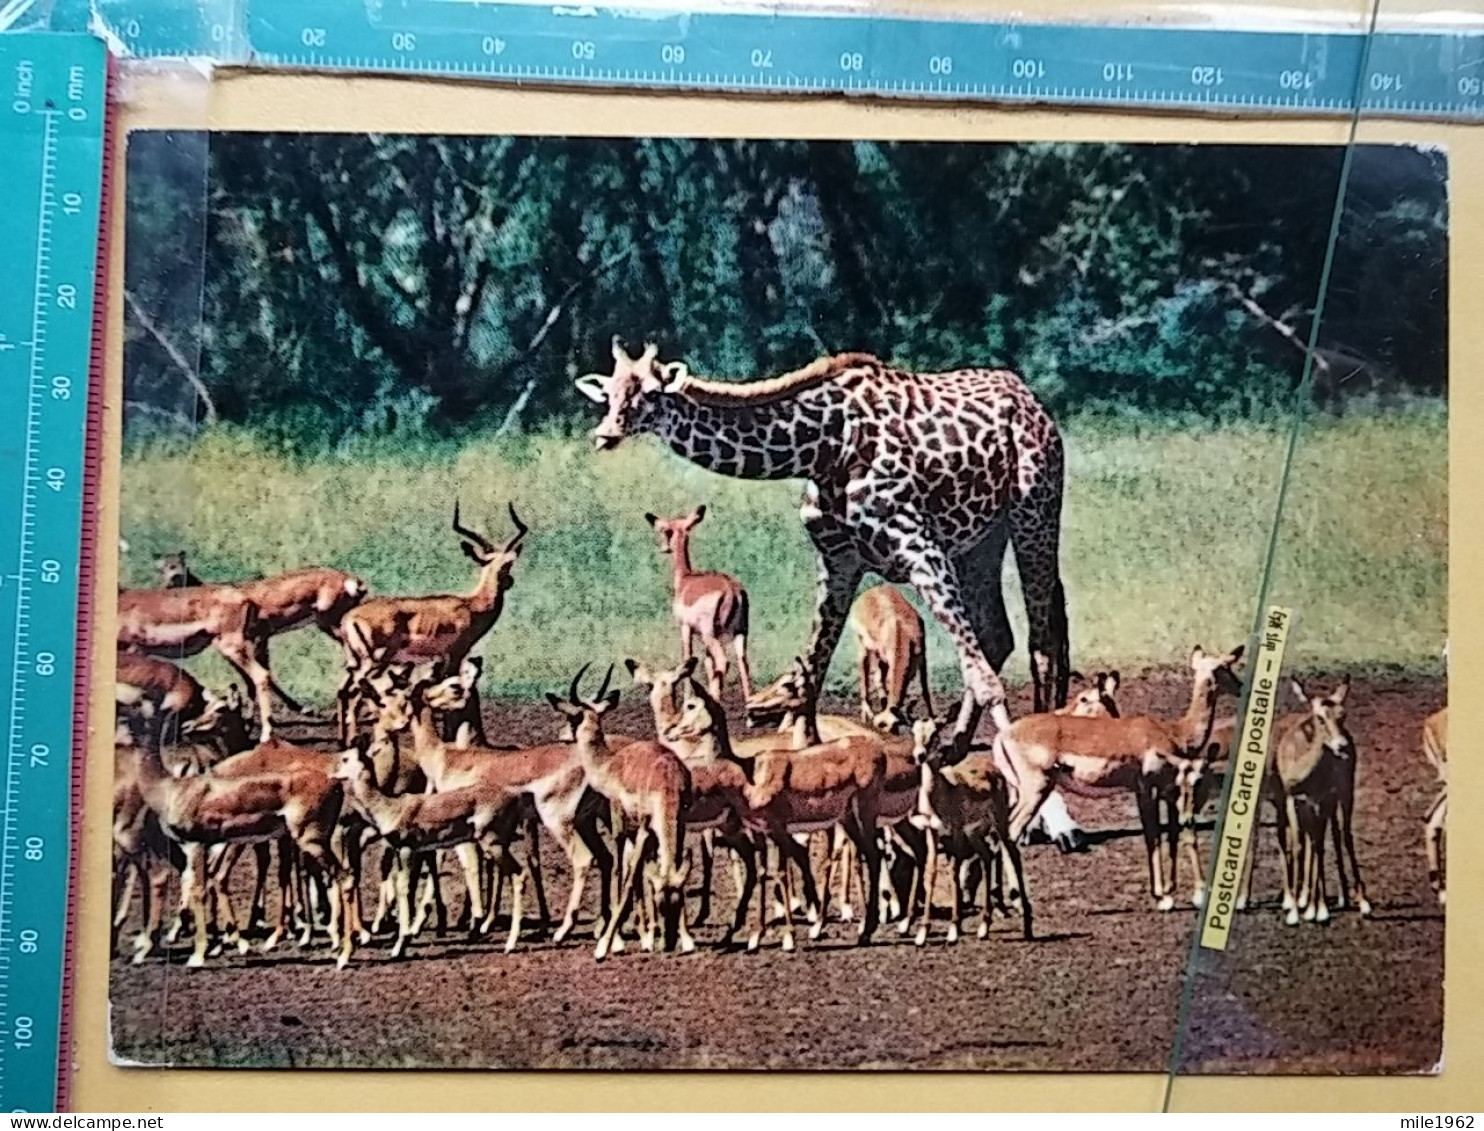 KOV 506-49 - GIRAFFE, IMPALA, AFRICA, ZAMBIA - Giraffen